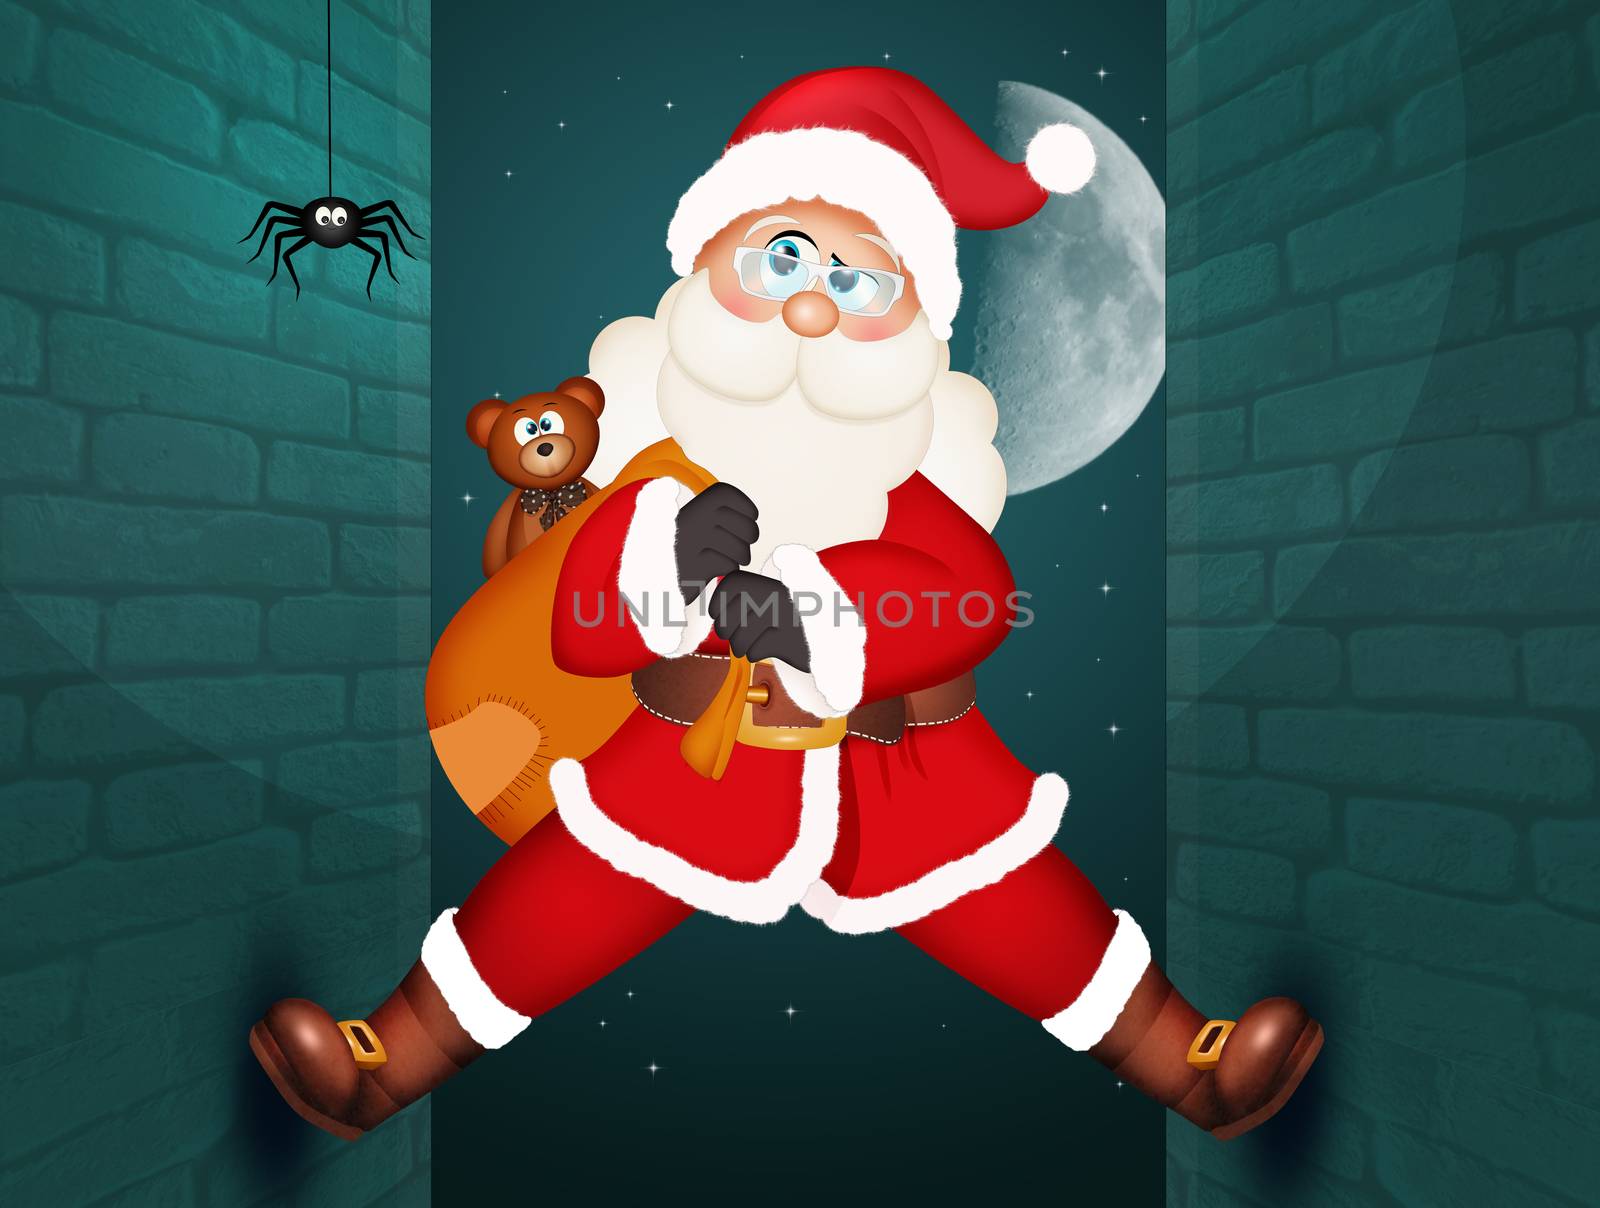 Santa Claus climbing on the homes wall by adrenalina